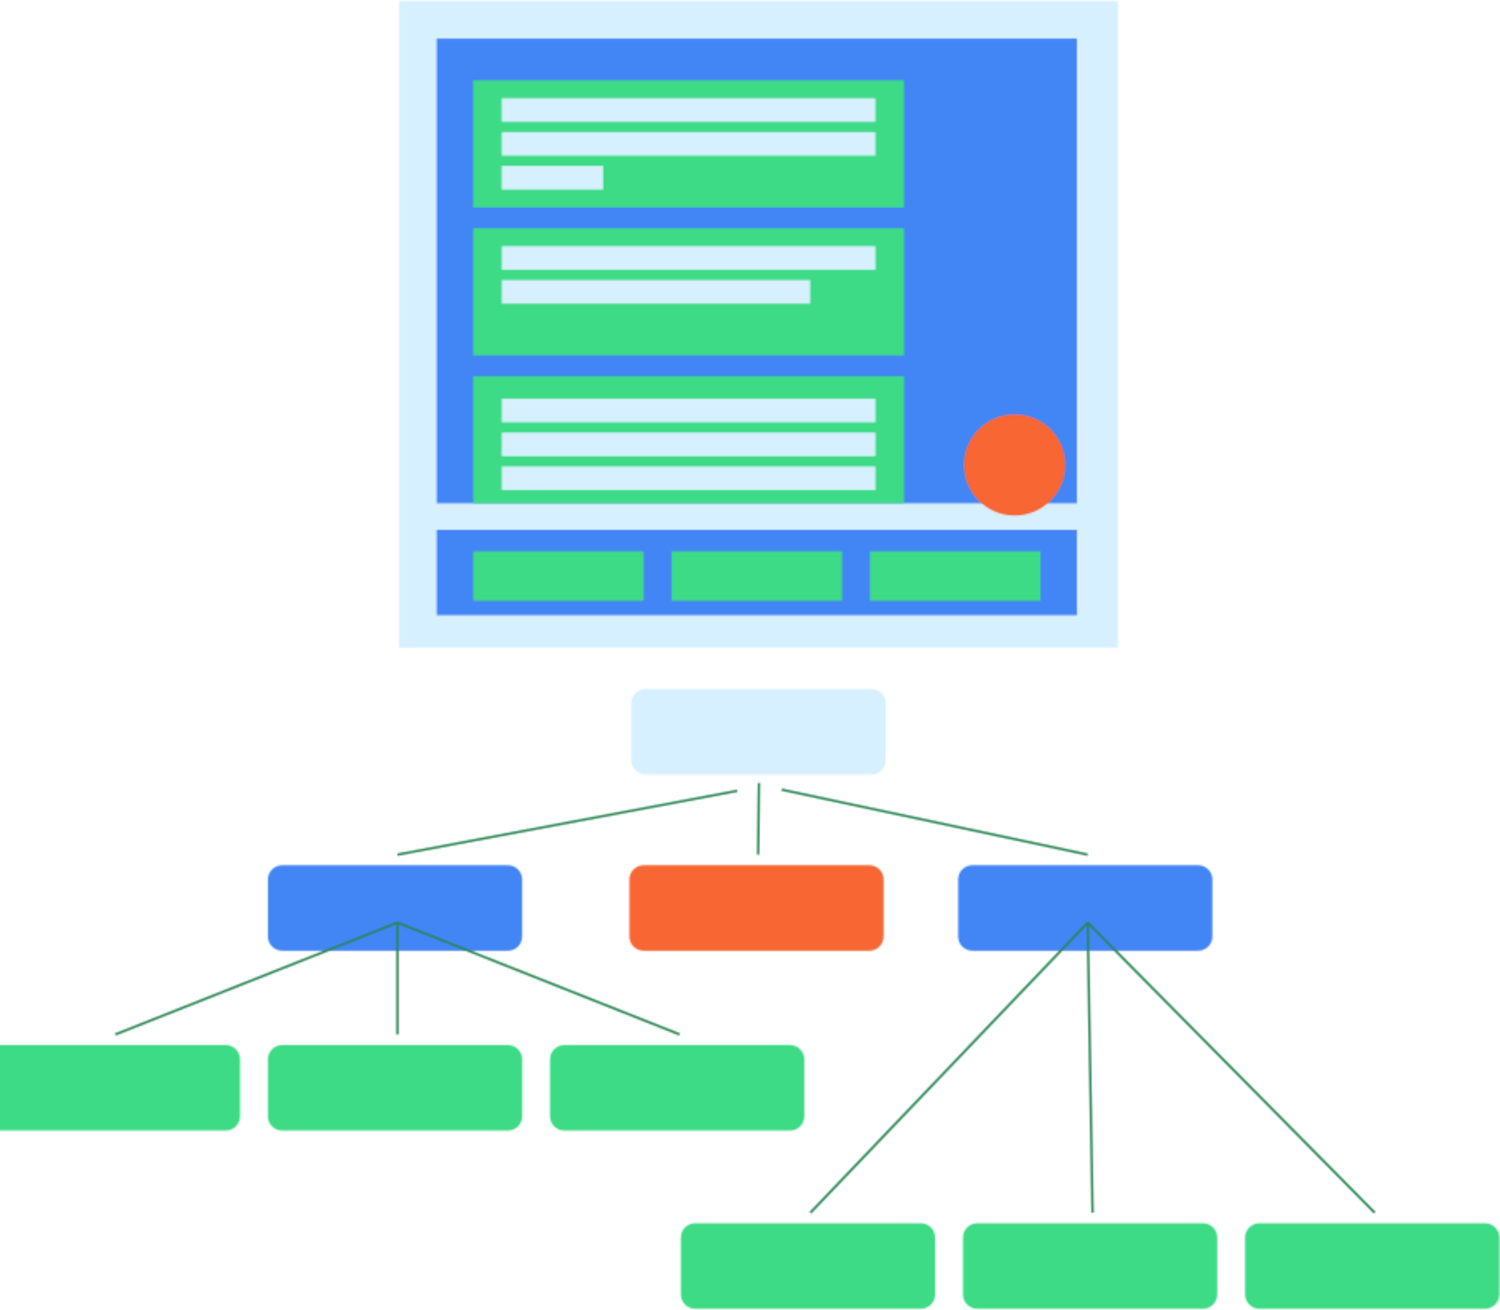 Eine typische UI-Hierarchie und ihre Semantikstruktur